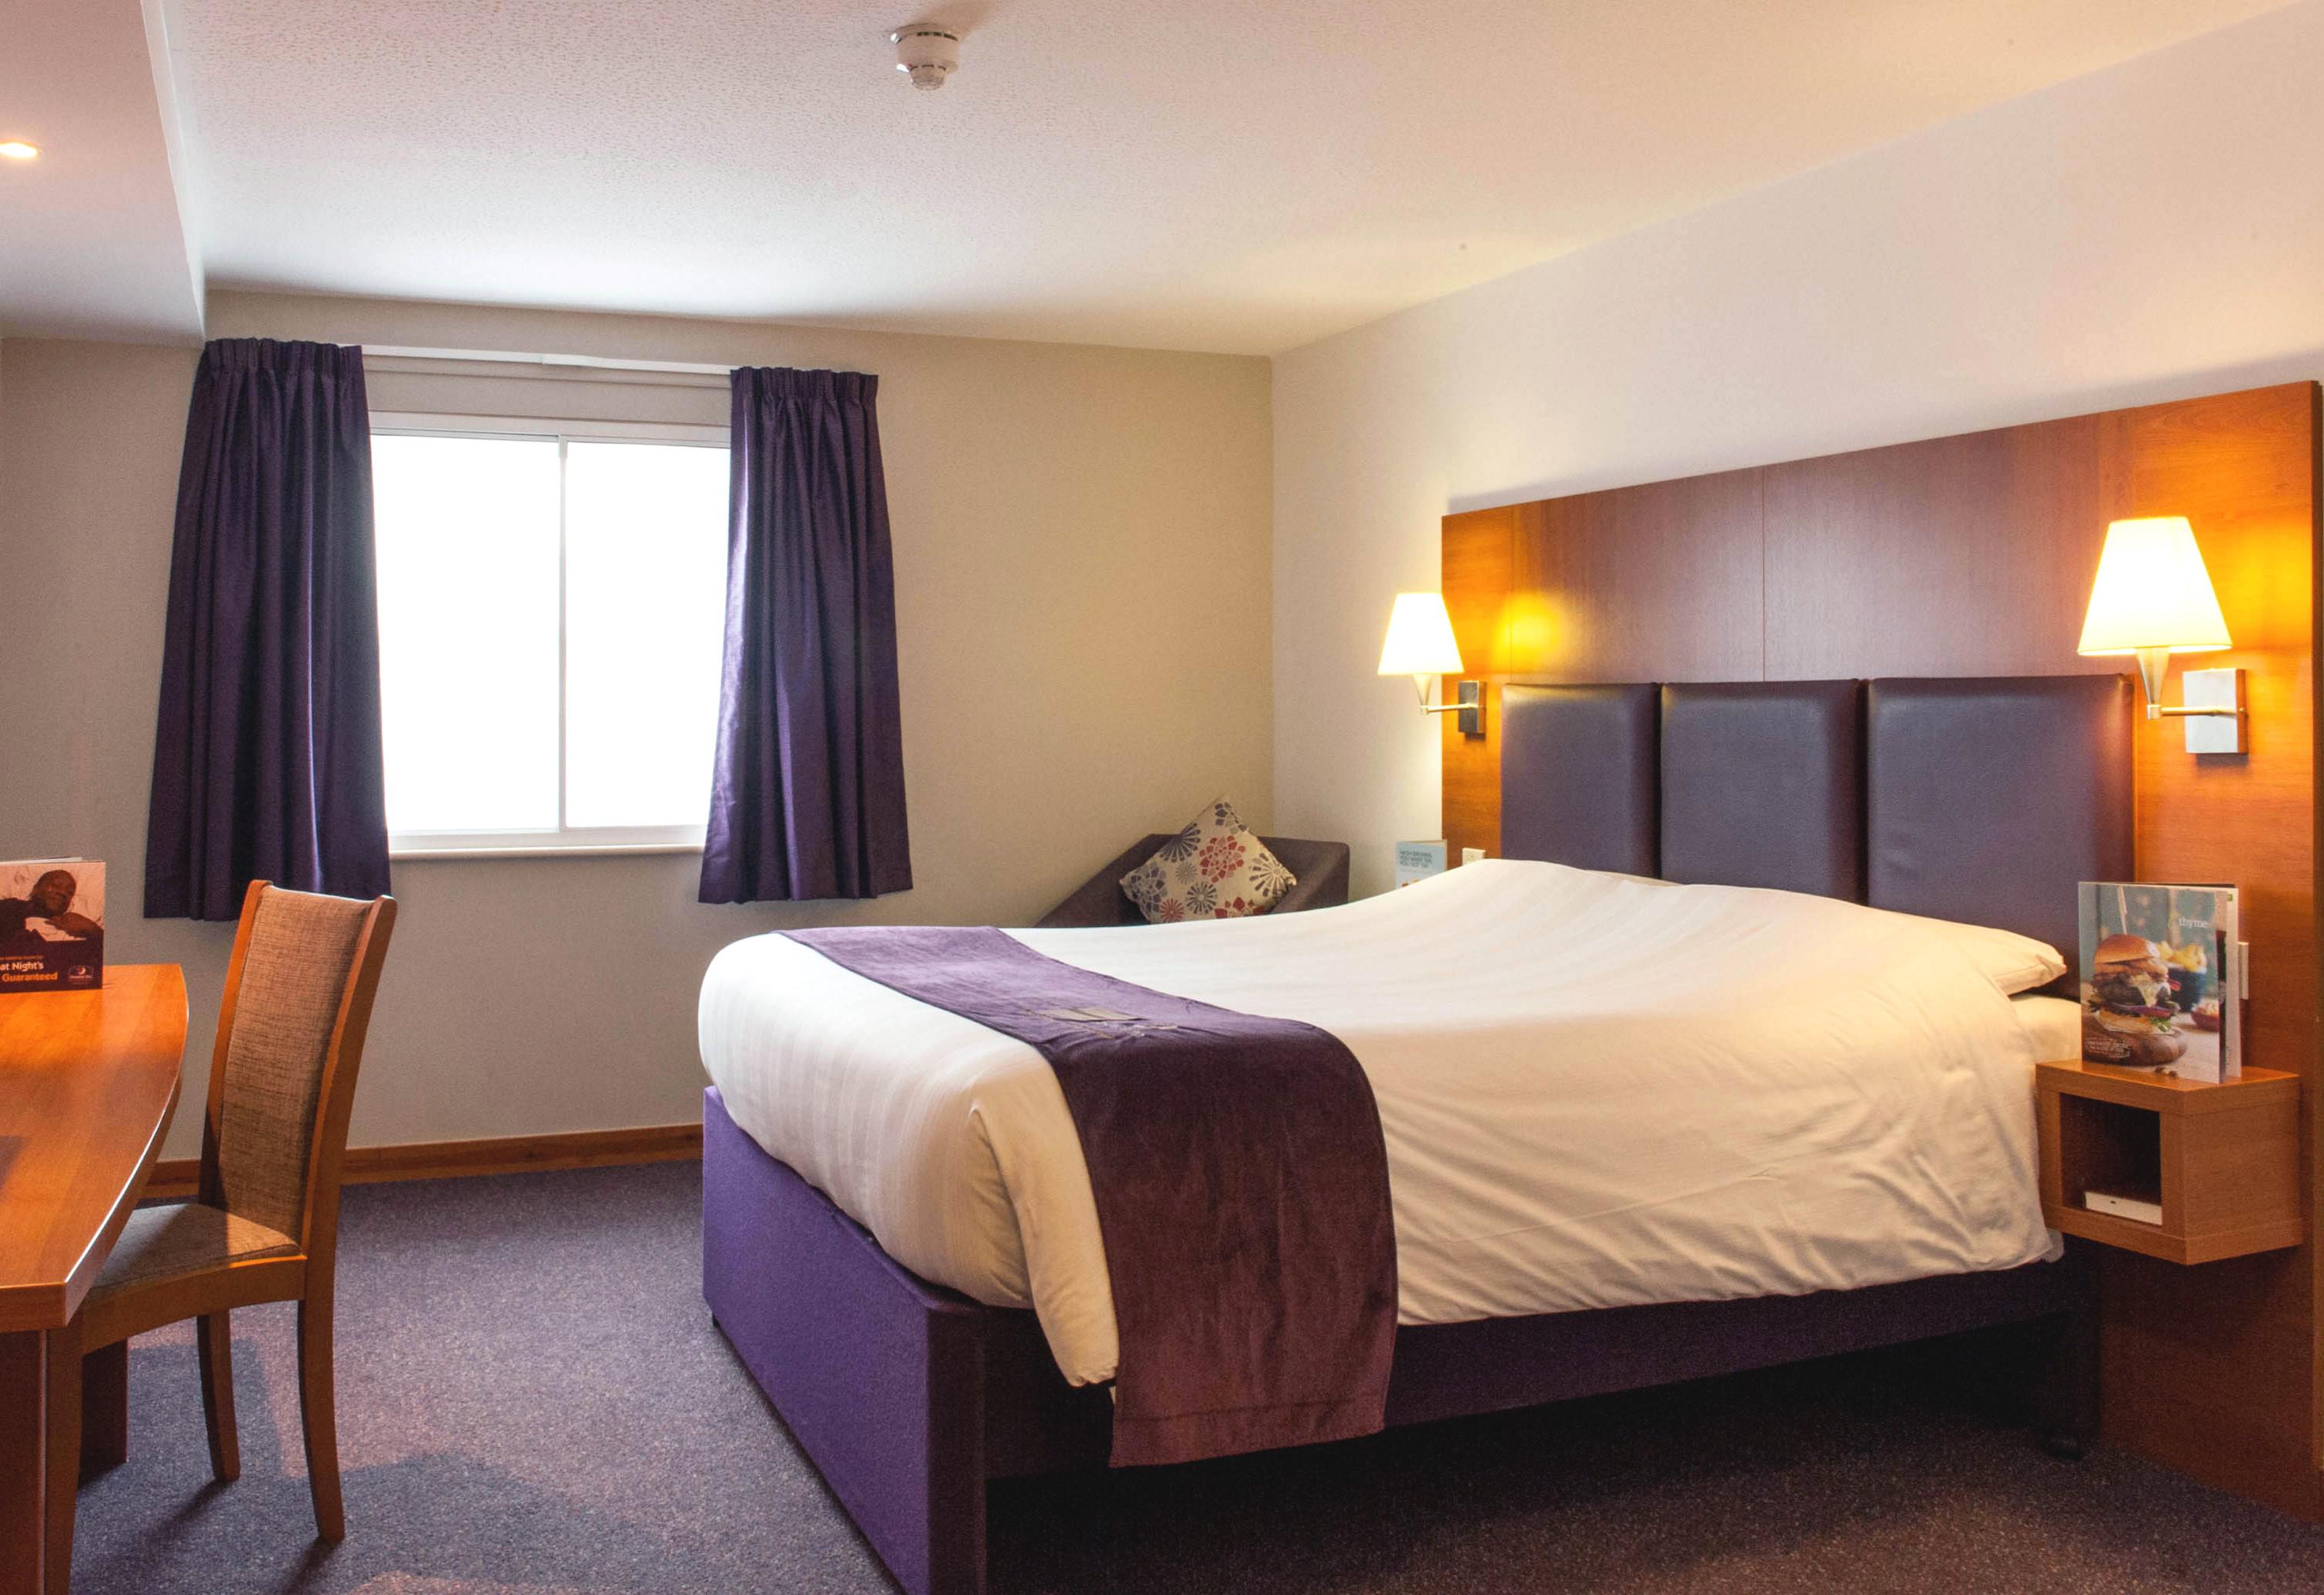 Premier Inn bedroom Premier Inn Wigan North (M6 Jct 27) hotel Wigan 03333 219147